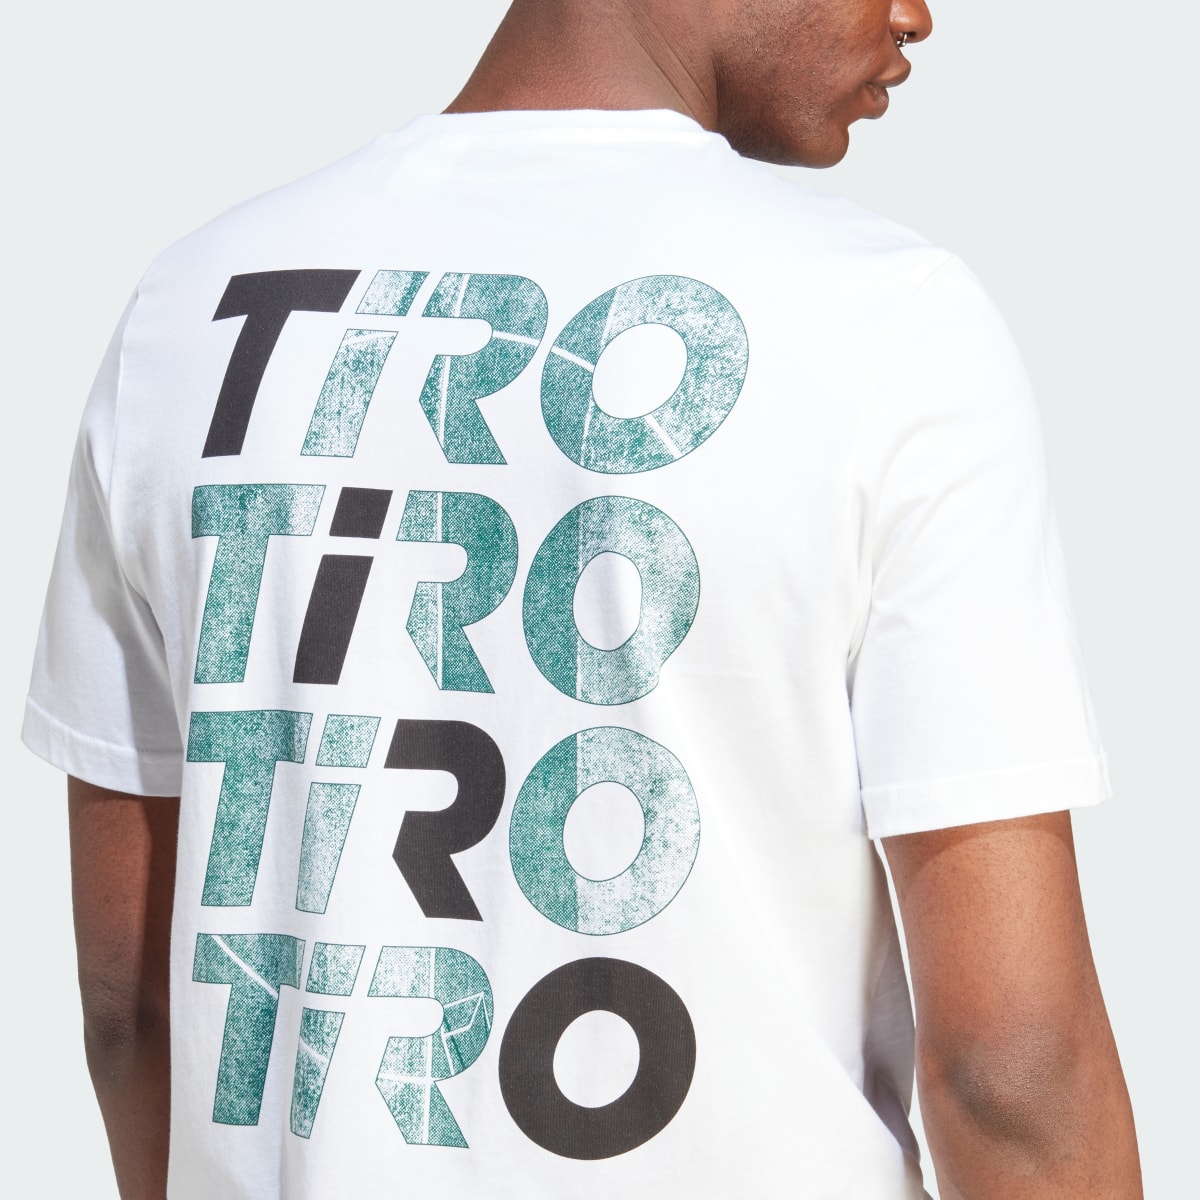 Adidas Tiro Wordmark Graphic T-Shirt. 7